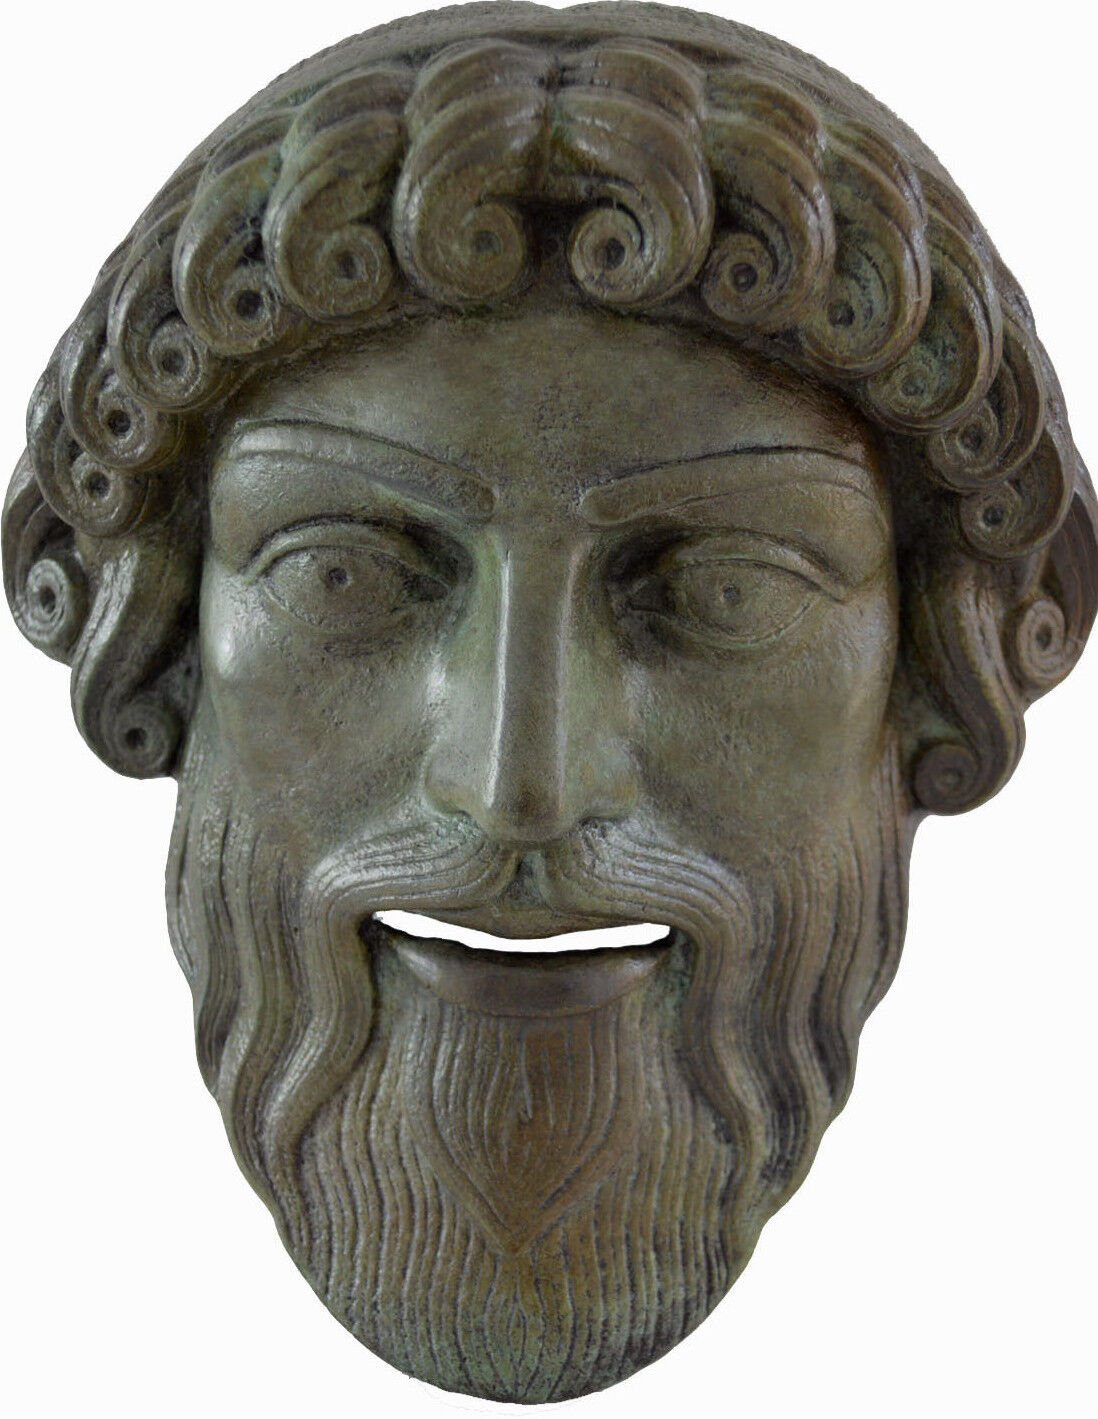 Mask of Poseidon, Posidon bronze God of the Sea atifact